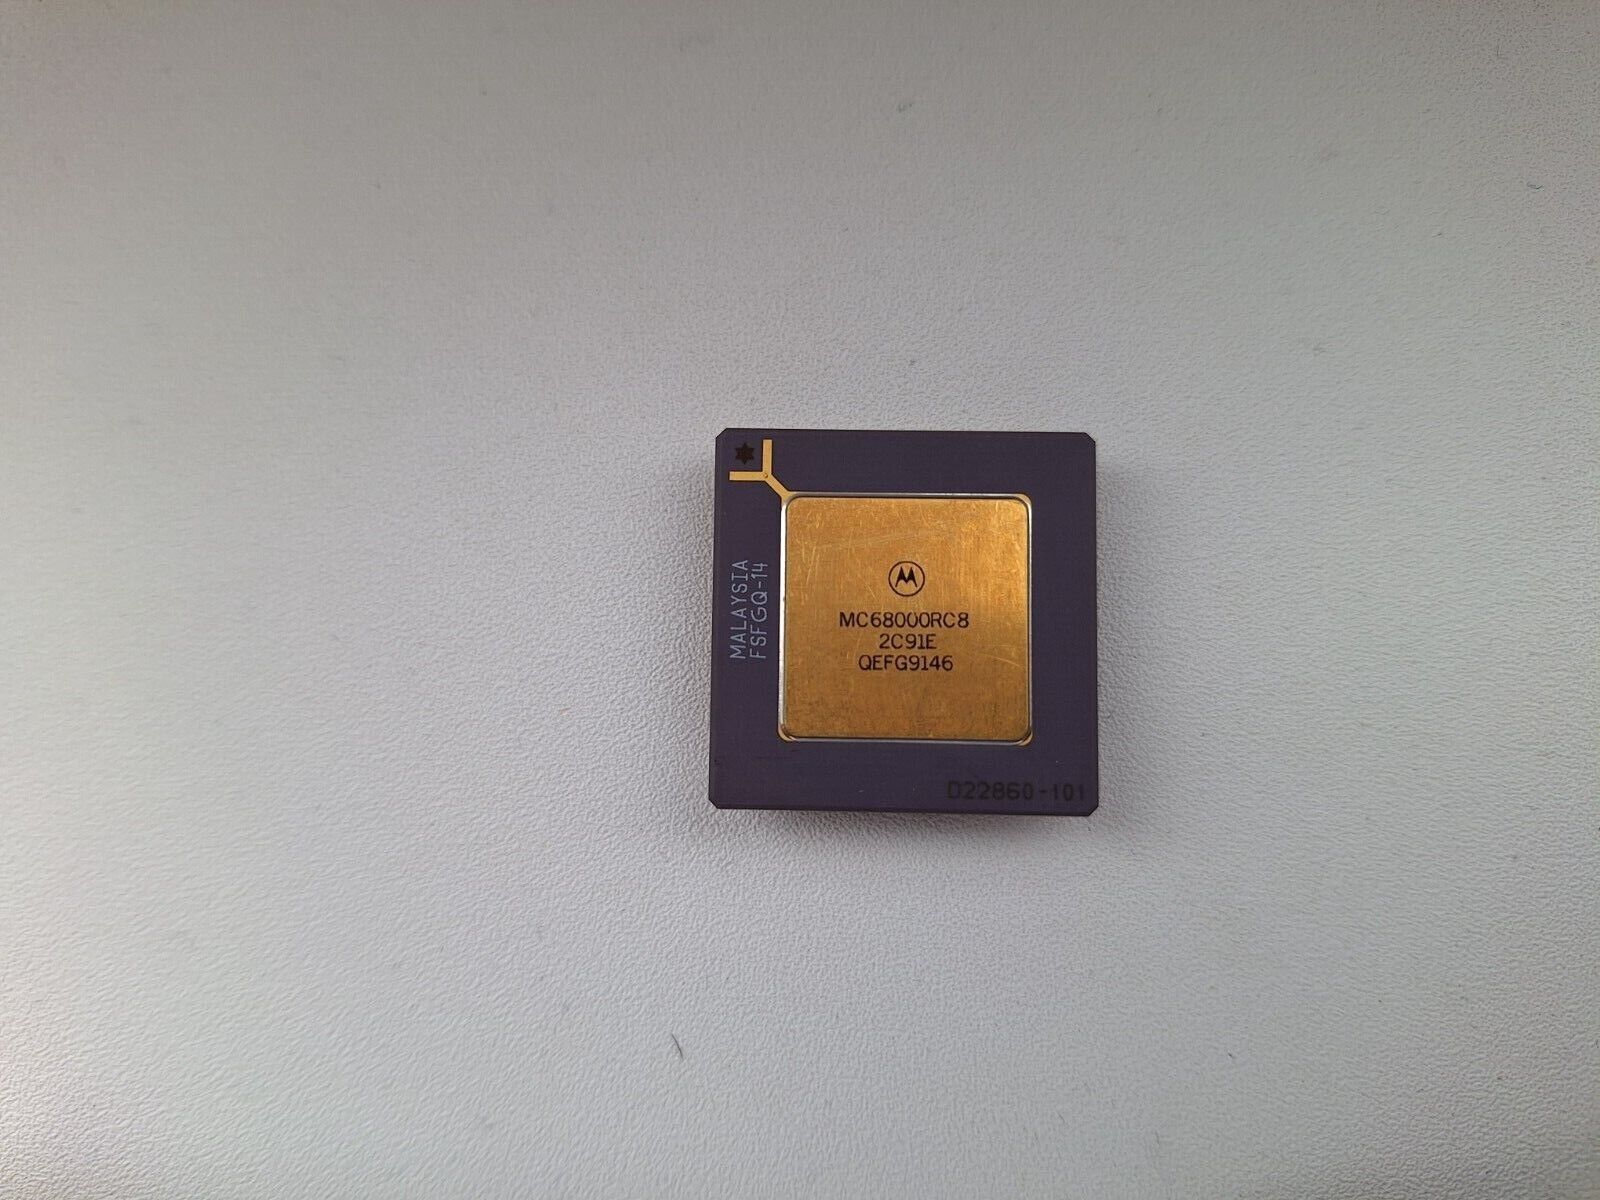 Motorola MC68000RC8 mask 2C91E 4C91E 0B26M 68000 vintage CPU GOLD